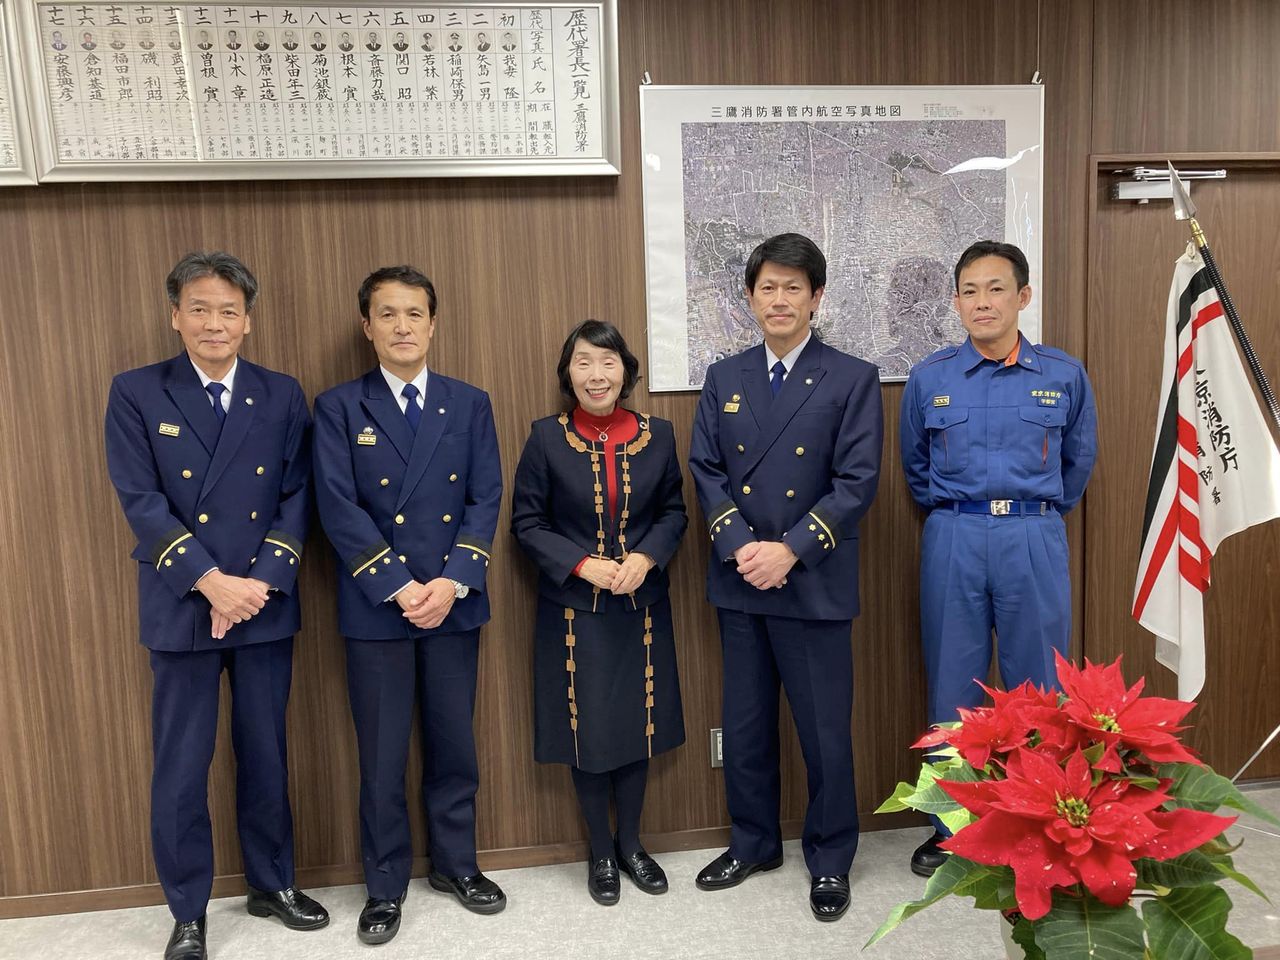 東京消防庁三鷹消防署の高橋公也署長、飯島一浩副署長らを訪問し対話しました